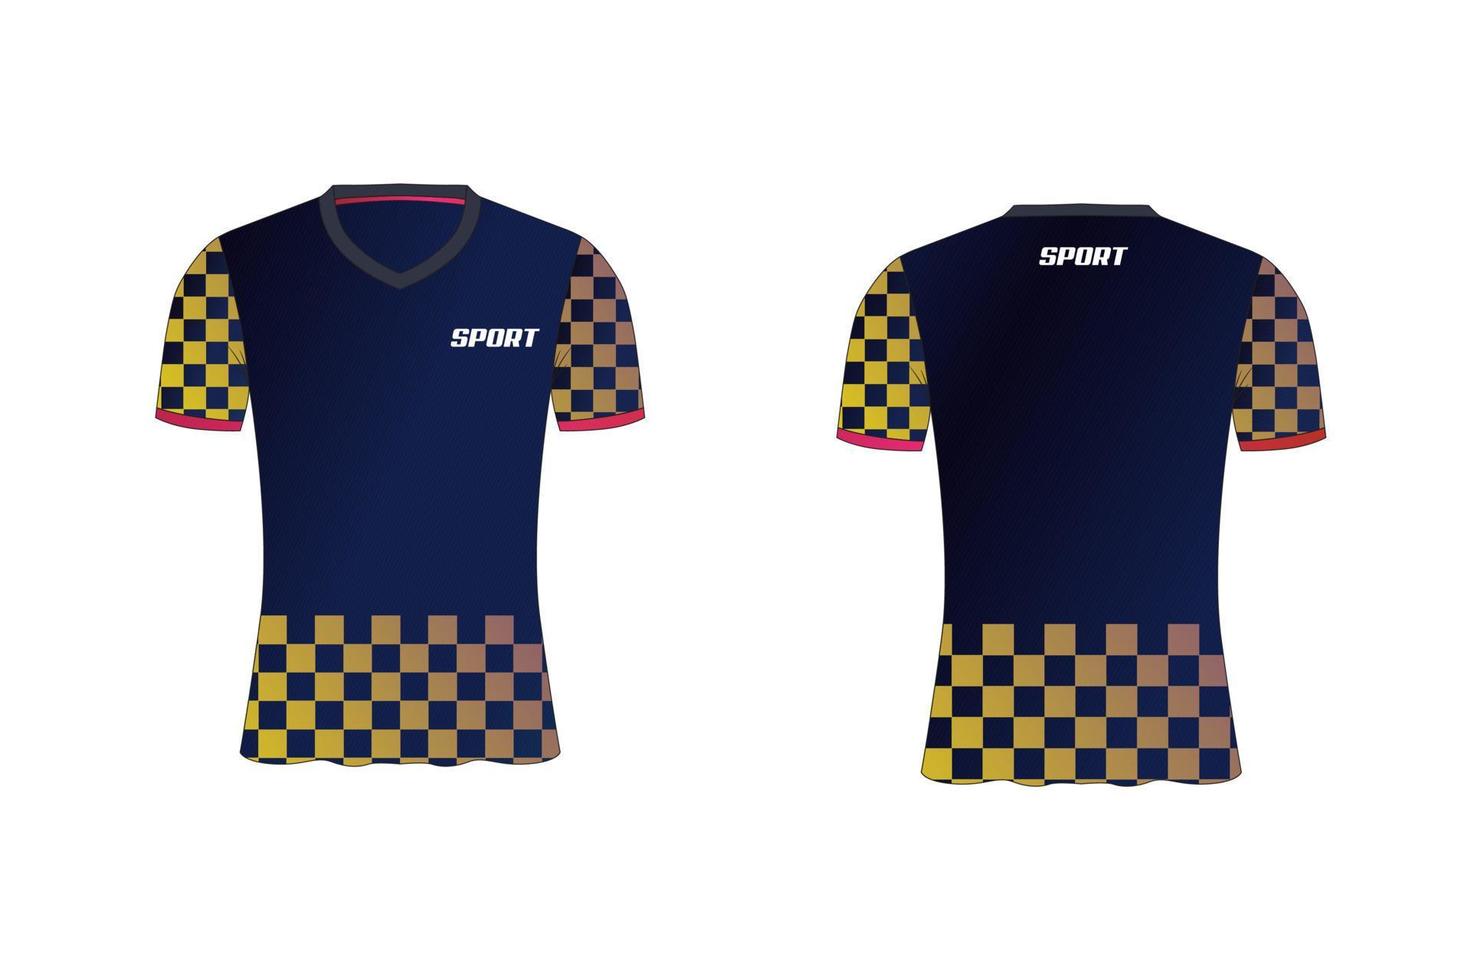 jersey es un diseño de camiseta deportiva mala para el equipo de fútbol, baloncesto y voleibol vector